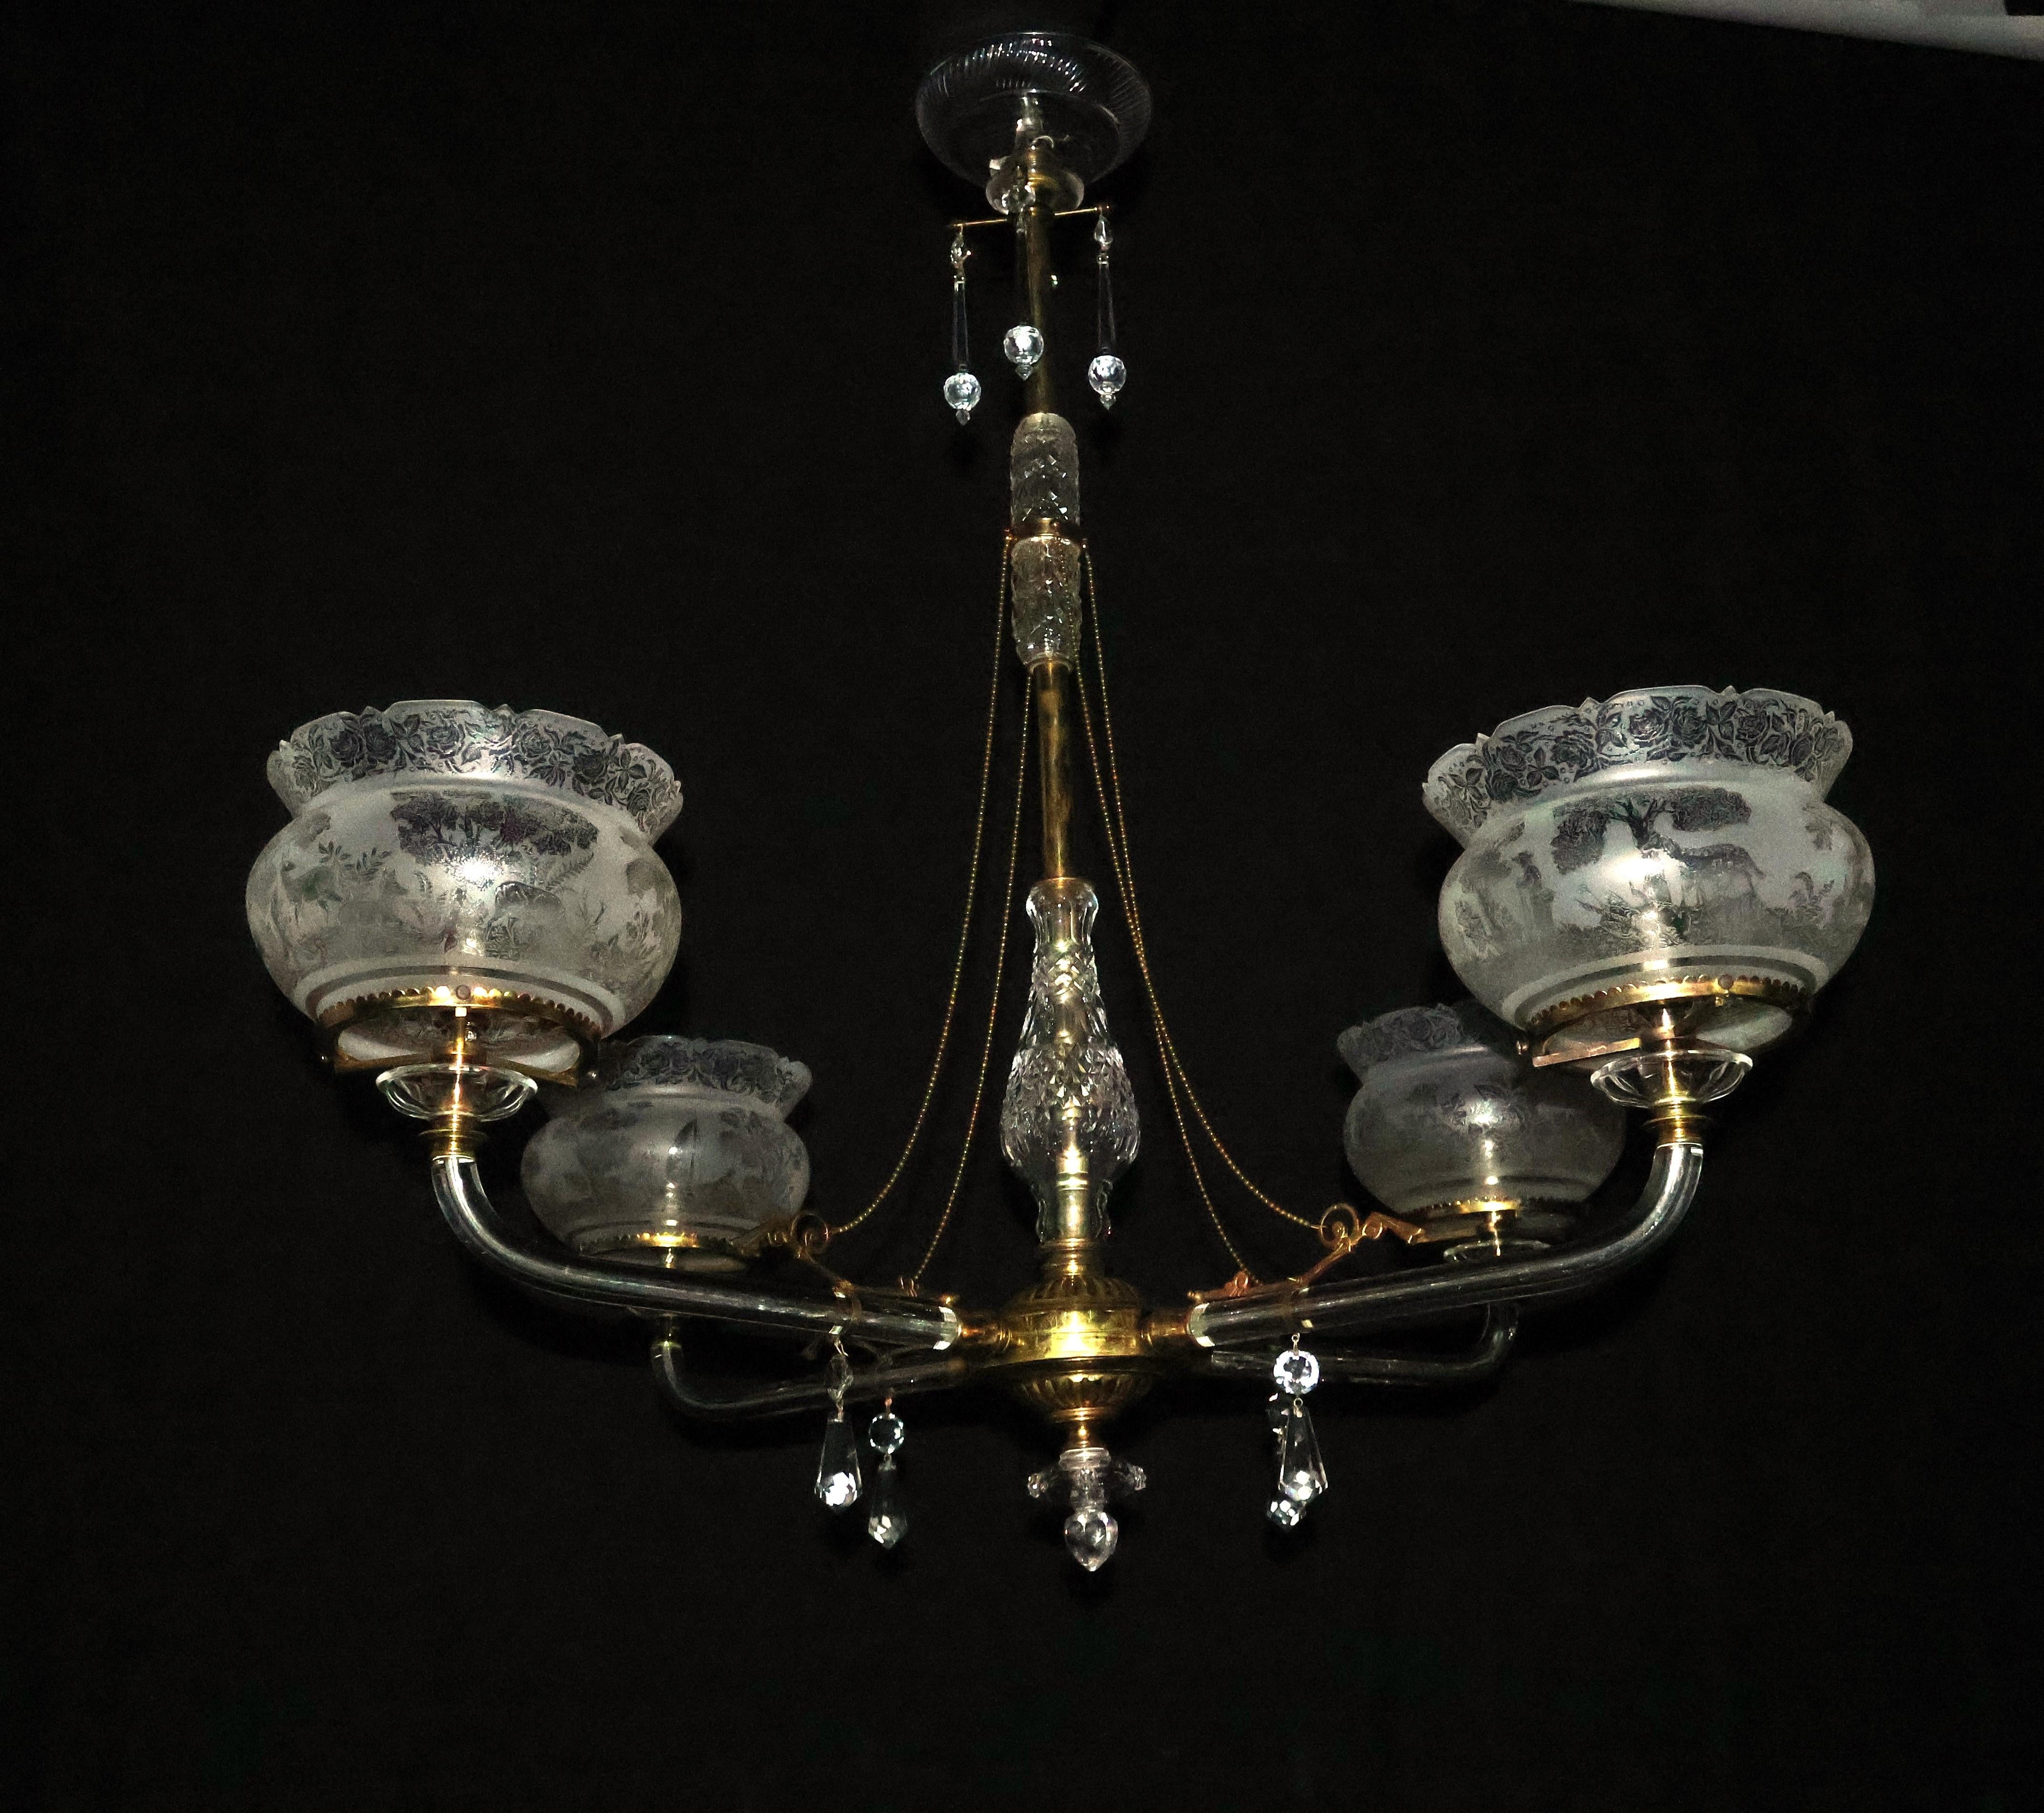 Ein sehr feiner und eleganter Gaskolier aus vergoldeter Bronze und Kristall, ursprünglich für Kerzen, jetzt elektrifiziert. Original-Schirme. 4 Lichter. England, um 1860.
Abmessungen: Höhe 39